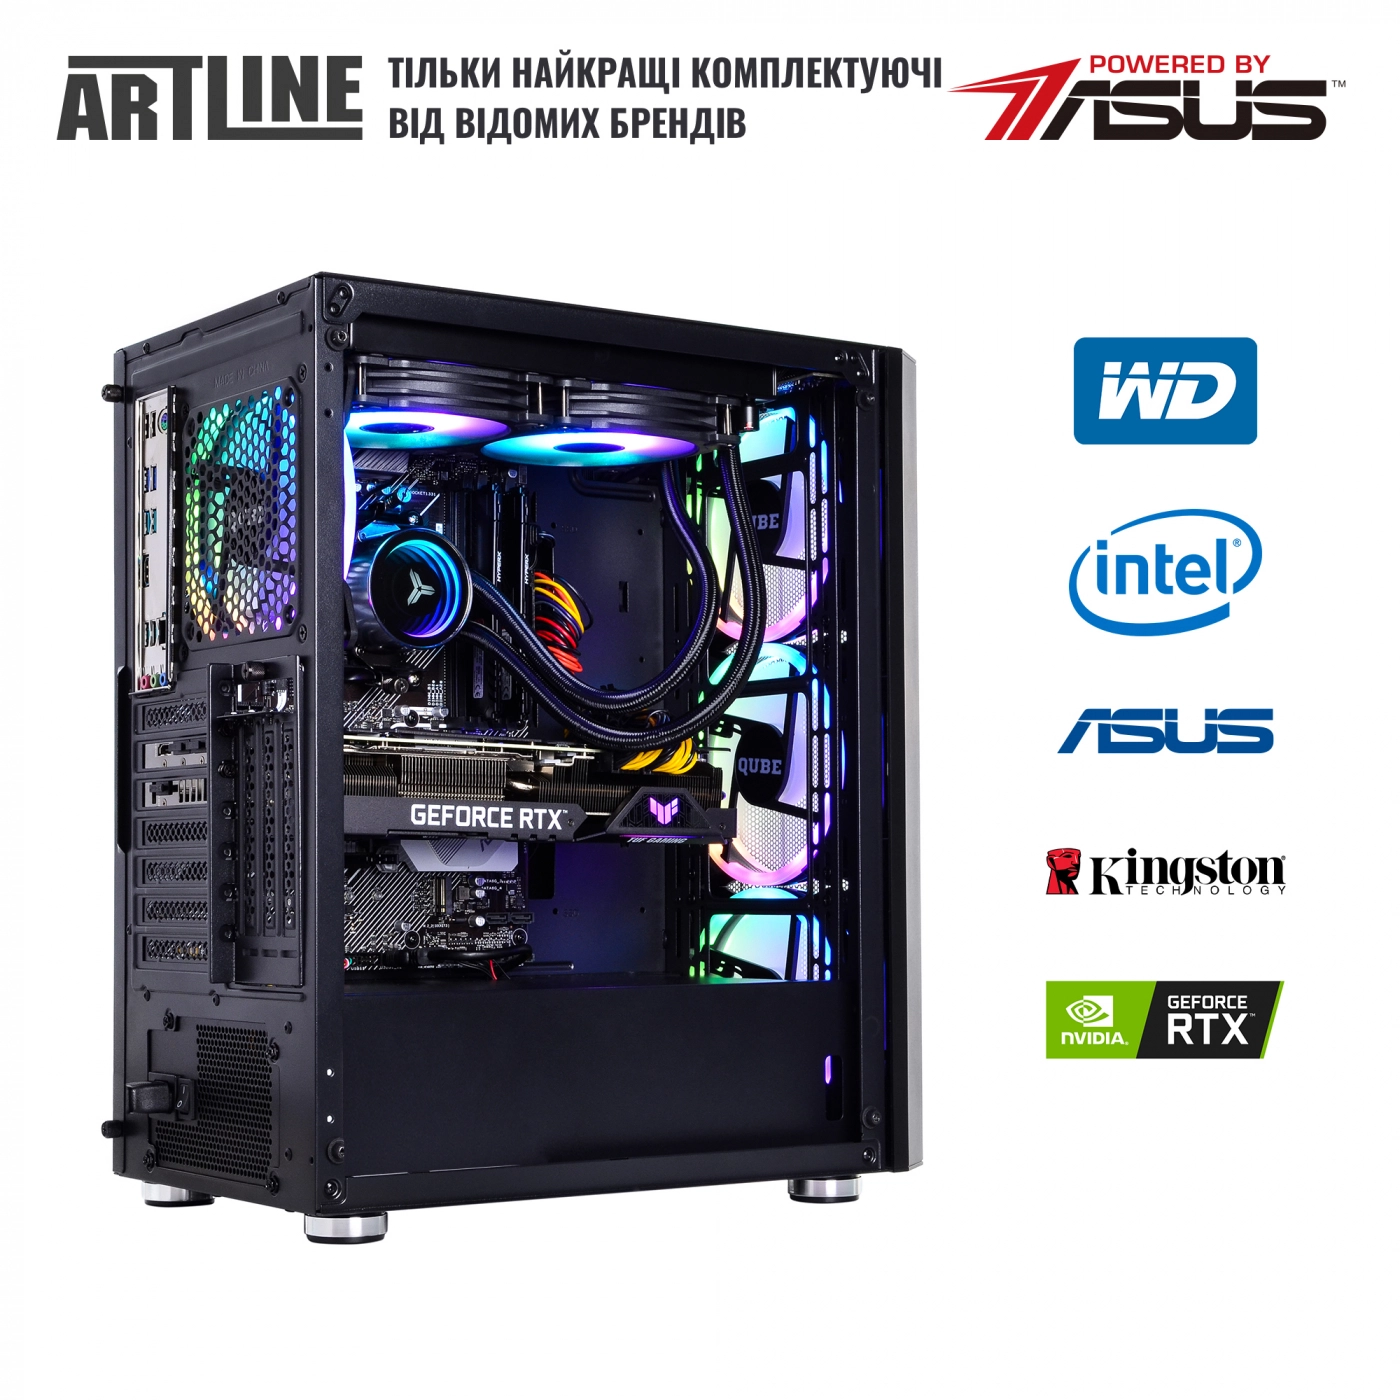 Купить Компьютер ARTLINE Gaming X95v43 - фото 8